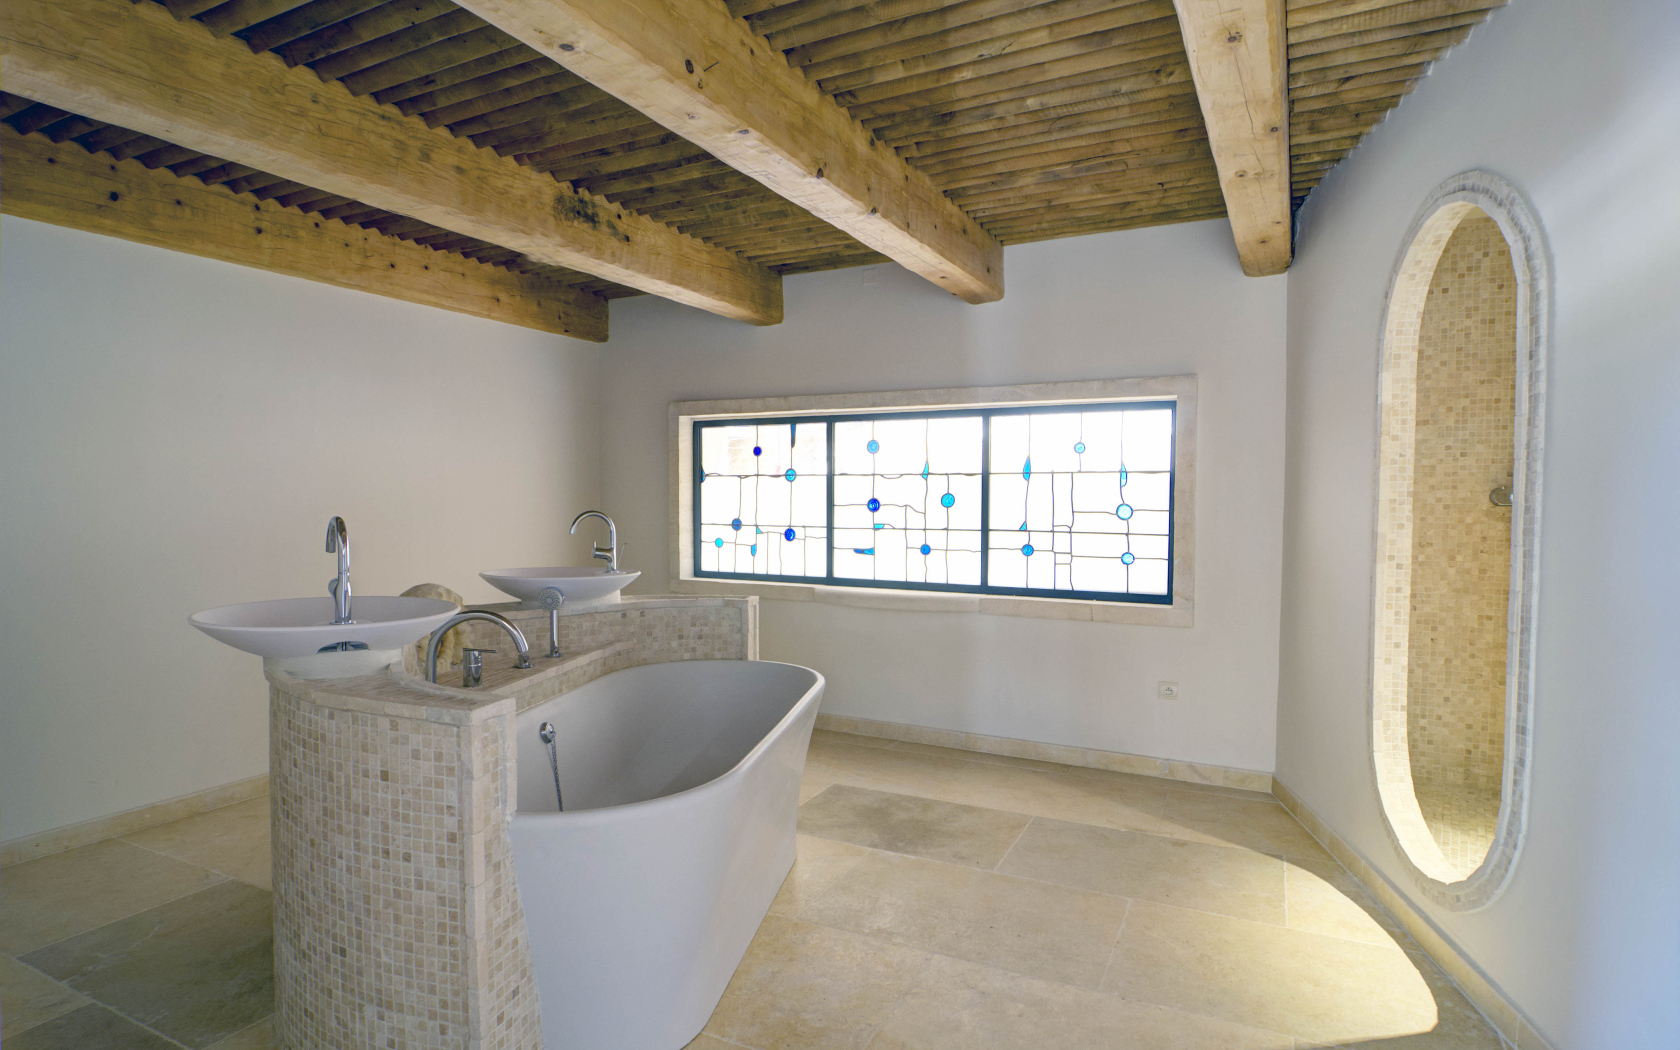 Ванная комната с деревянной крышей